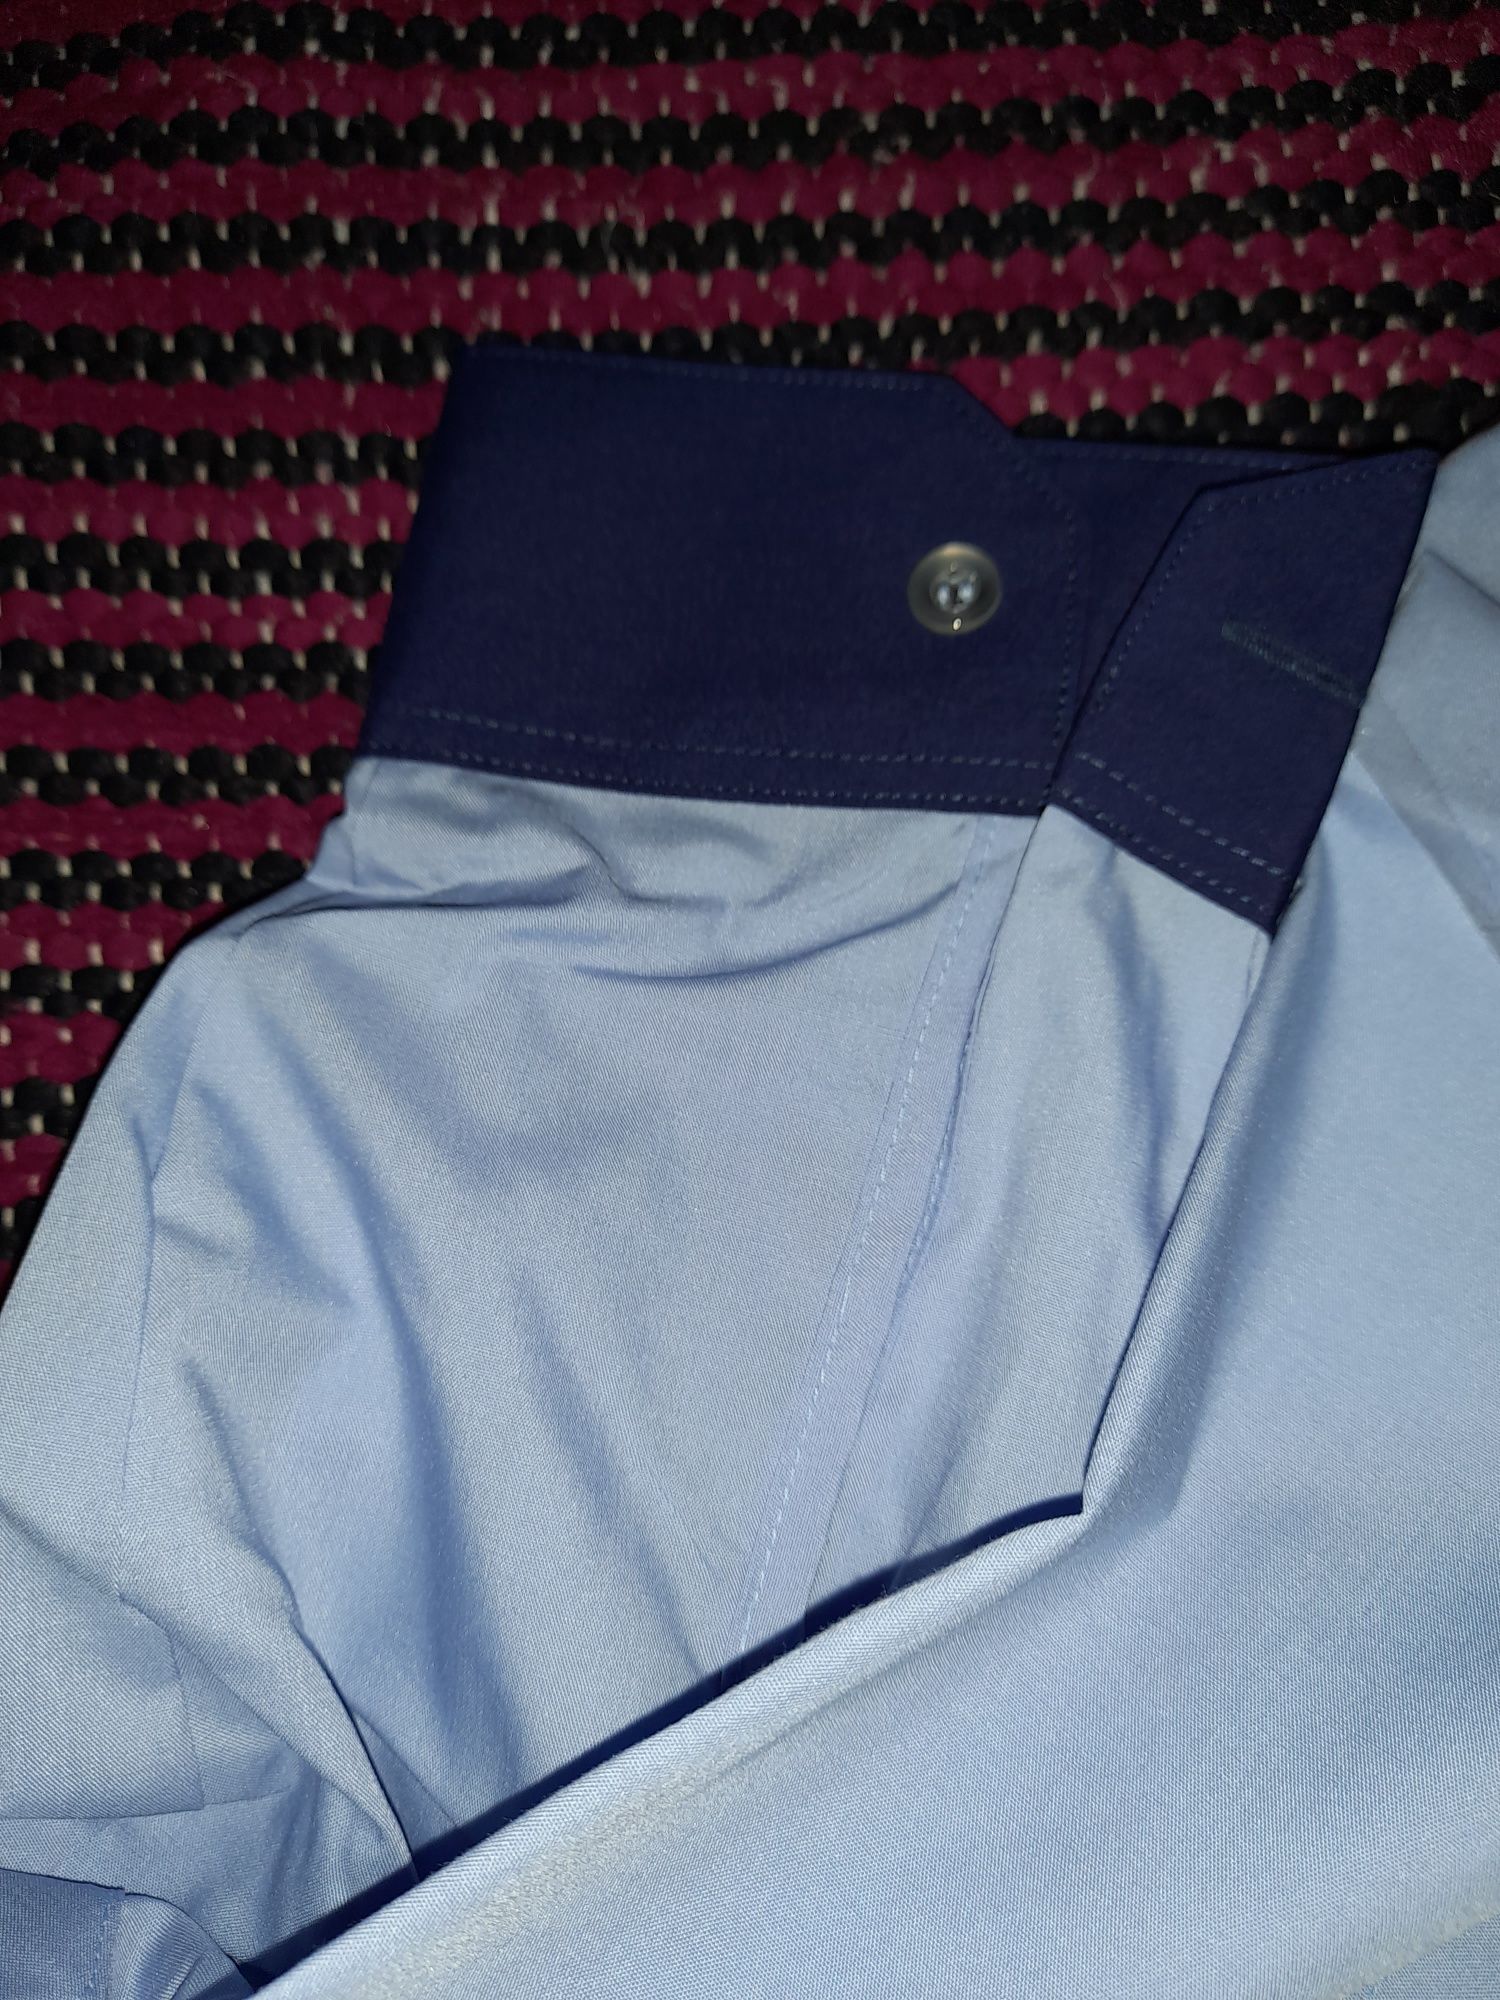 Koszula długi rękaw, koszula niebieska, koszula służbowa,  koszula